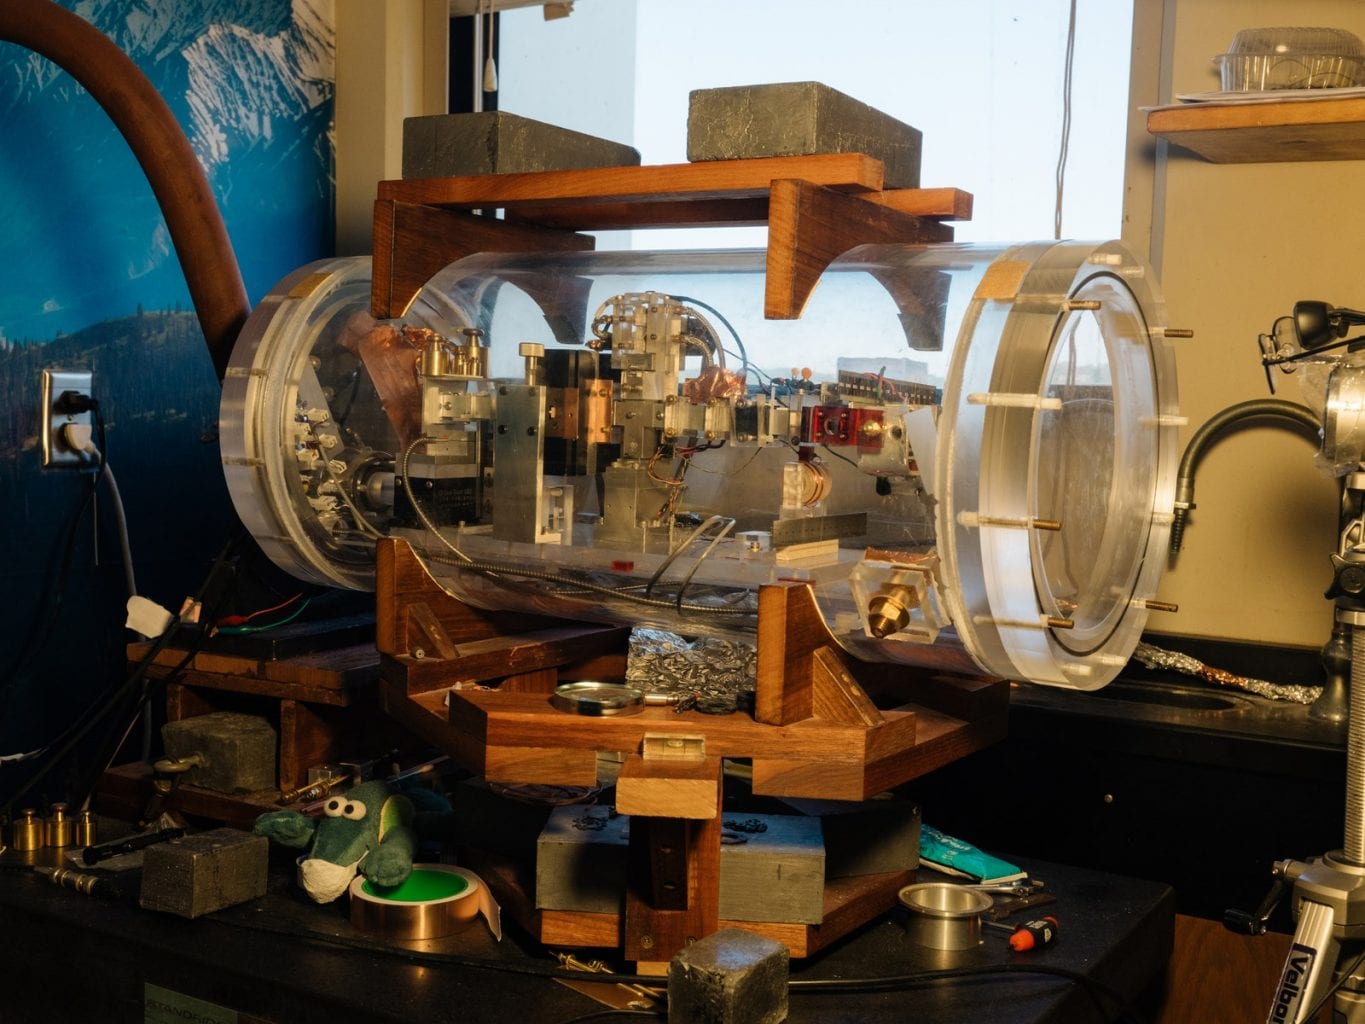 Устройство для испытания двигателя MEGA, созданное профессором Вудвордом, помещено в самодельную вакуумную камеру. Предоставлено: Розетт Раго / Wired.